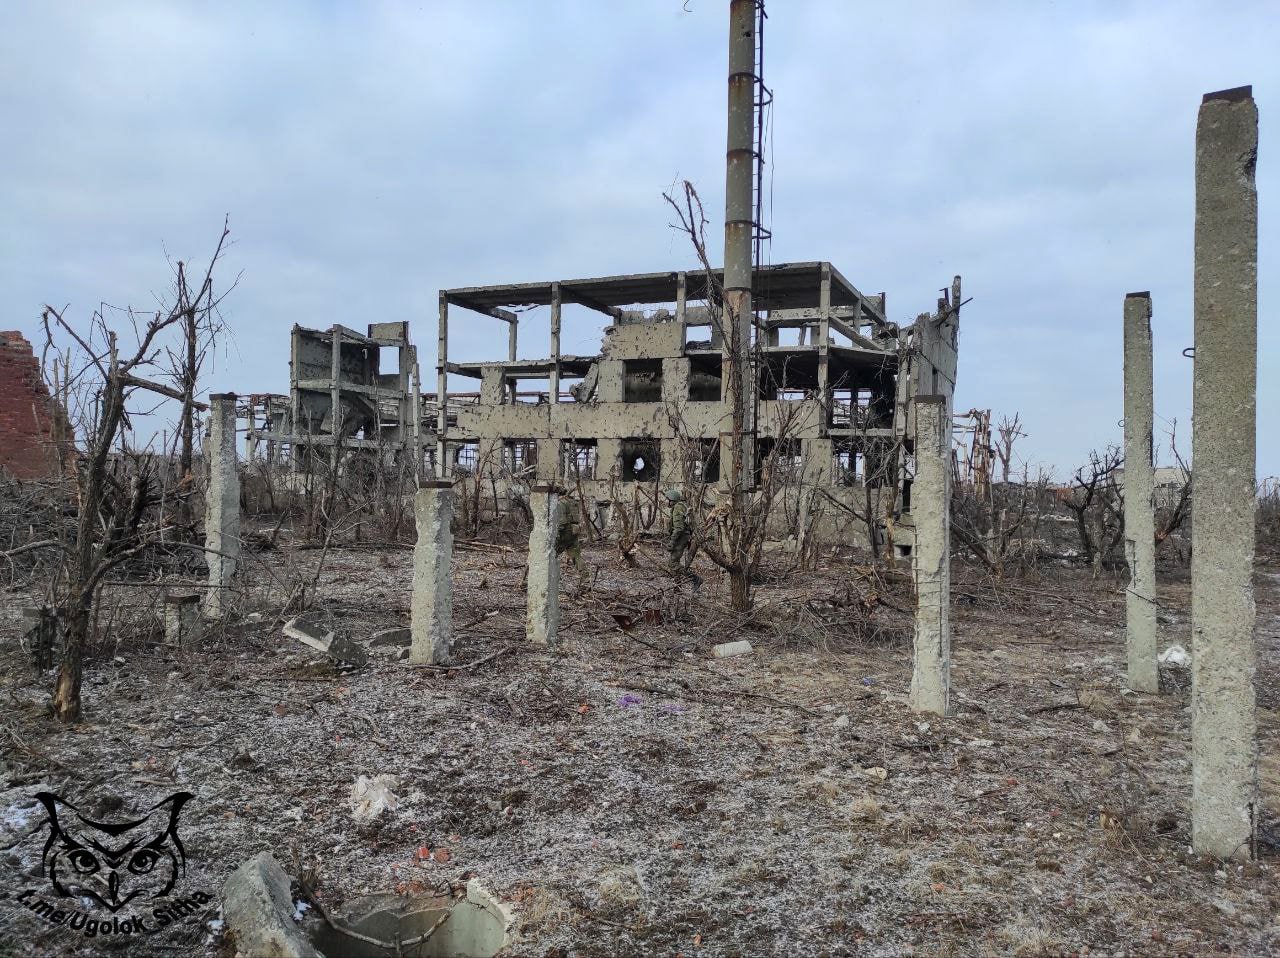 Фото (2) разрушенной Авдеевки. Источник - Телеграм